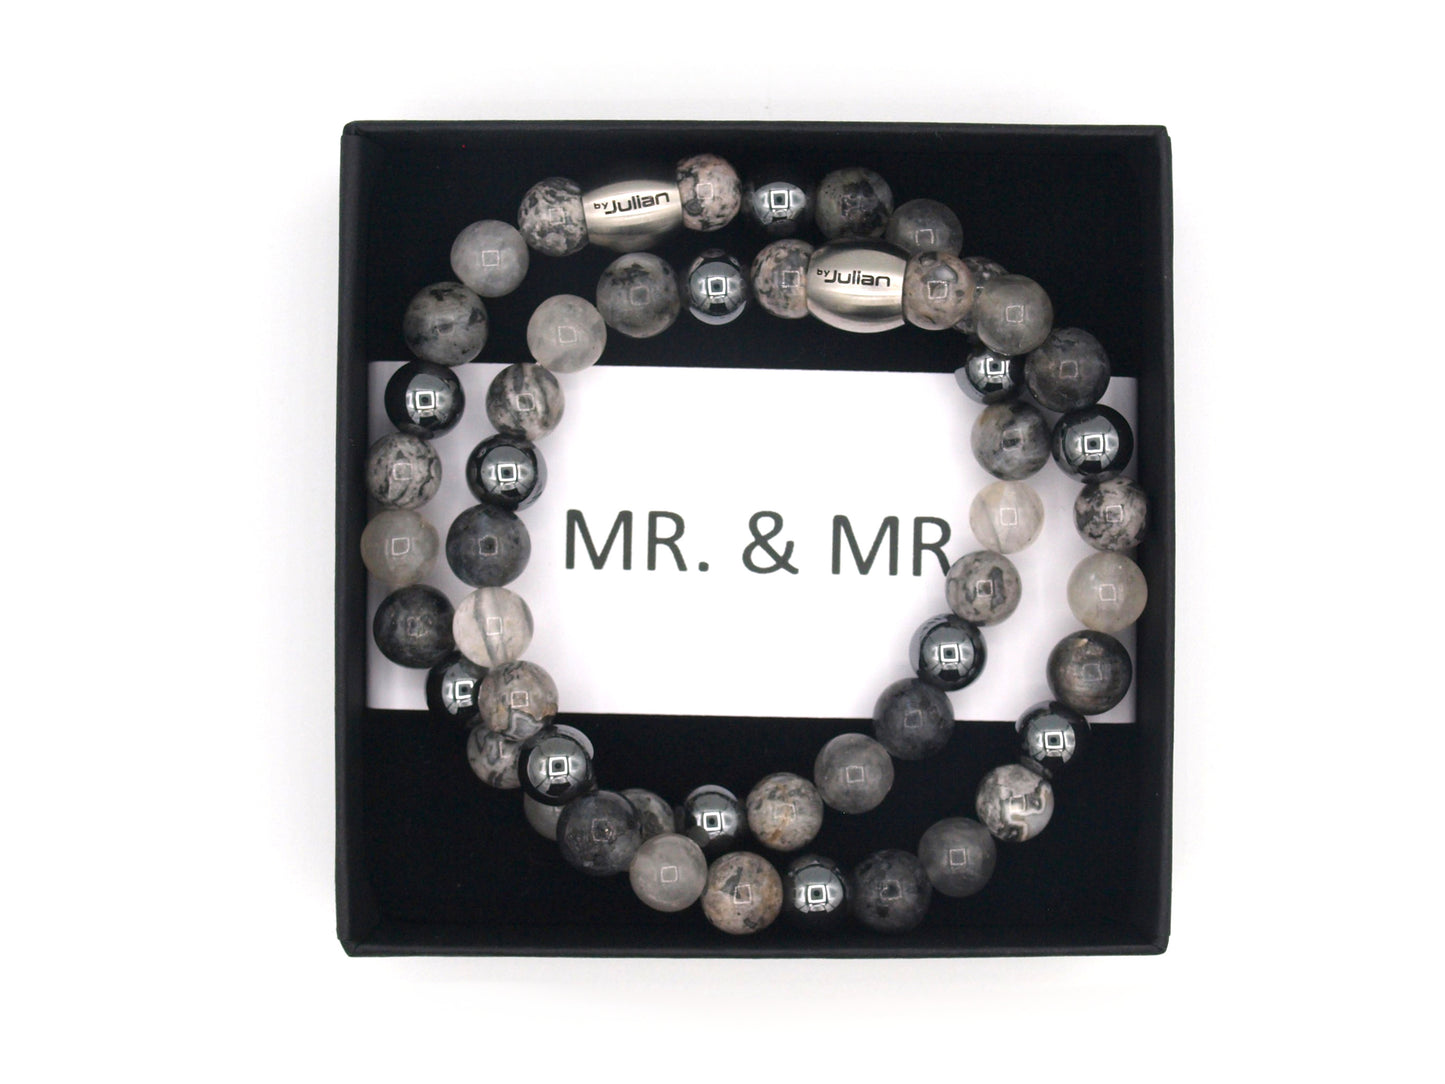 MR. & MR. armbandenset grijs